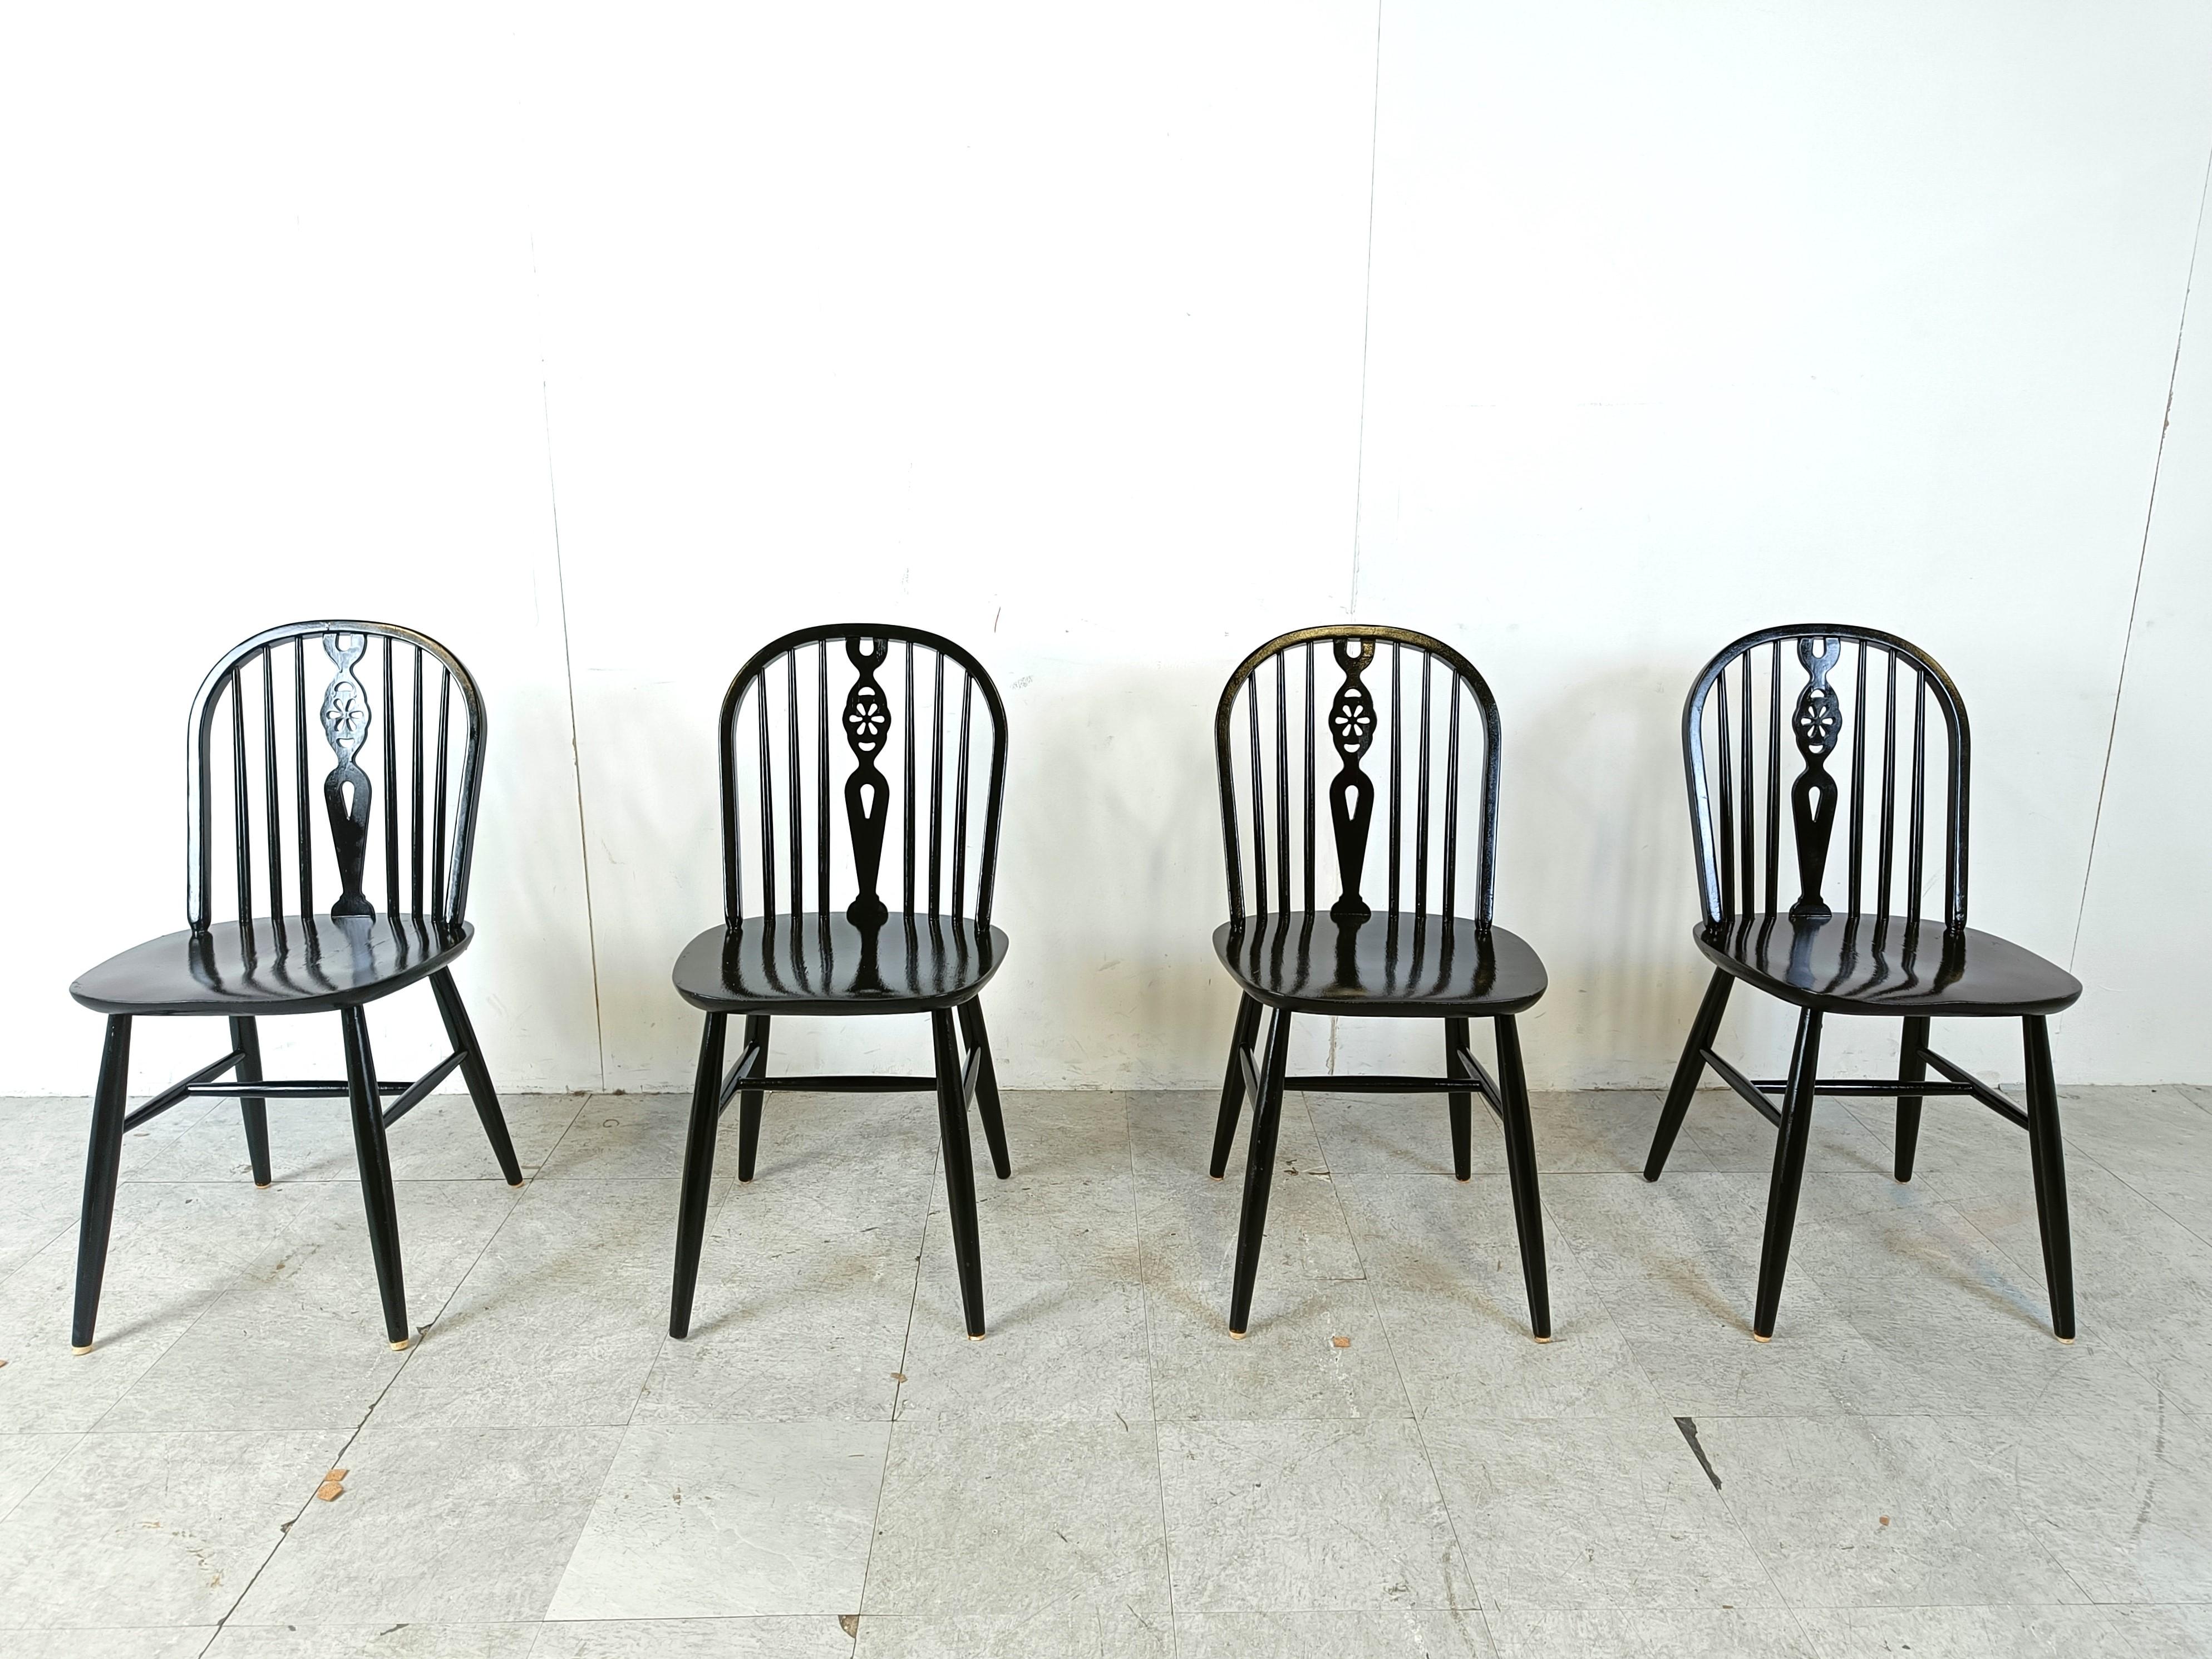 Satz von 4 Ercol Esszimmerstühlen mit Spindelrücken.

Die Stühle sind mit viel Liebe zum Detail gefertigt und bestehen aus ebonisierten Holzrahmen.

Zeitlose Stücke, die Ihrem Interieur einen antiken/vintage Touch verleihen und sich gut mit modernen